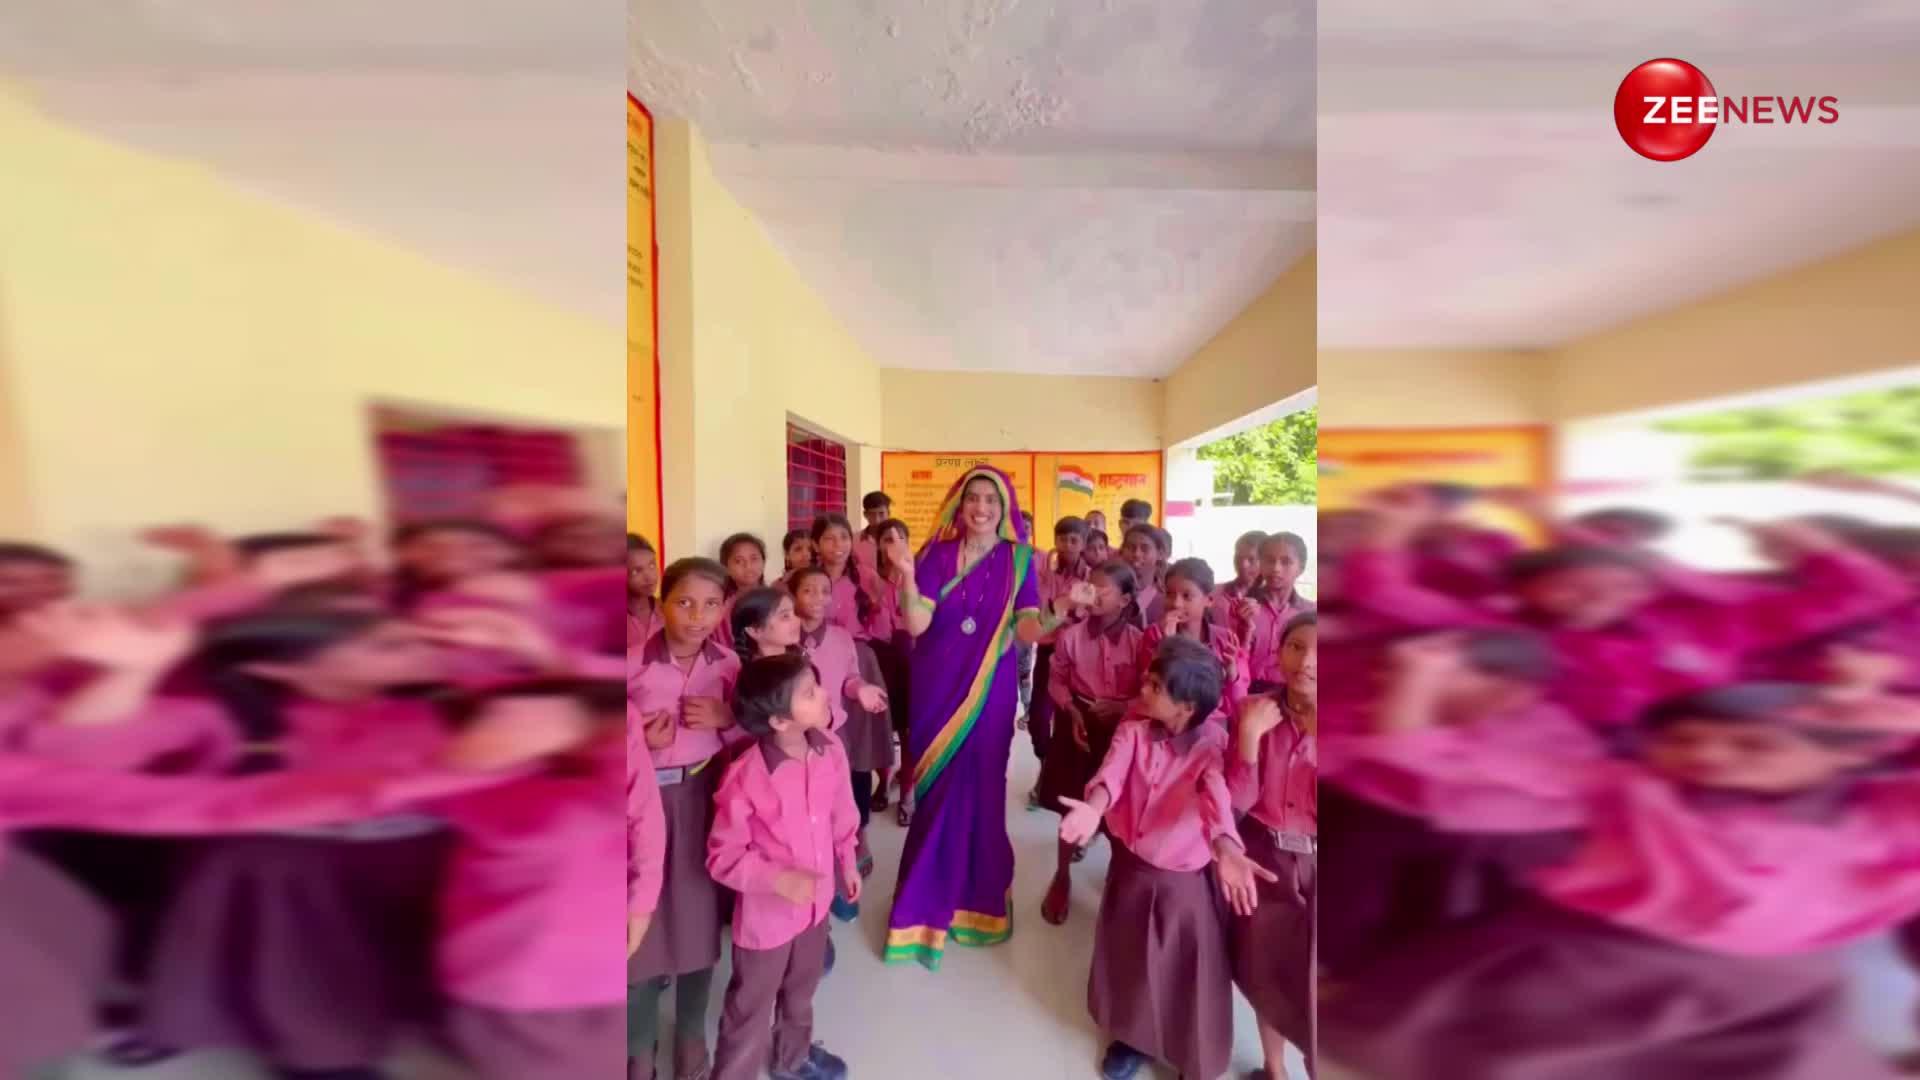 सो क्यूट! भोजपुरी हसीना Akshara Singh ने सरकारी स्कूल के बच्चों के साथ बनाया ऐसा वीडियो कि जीत लिया फैंस का दिल